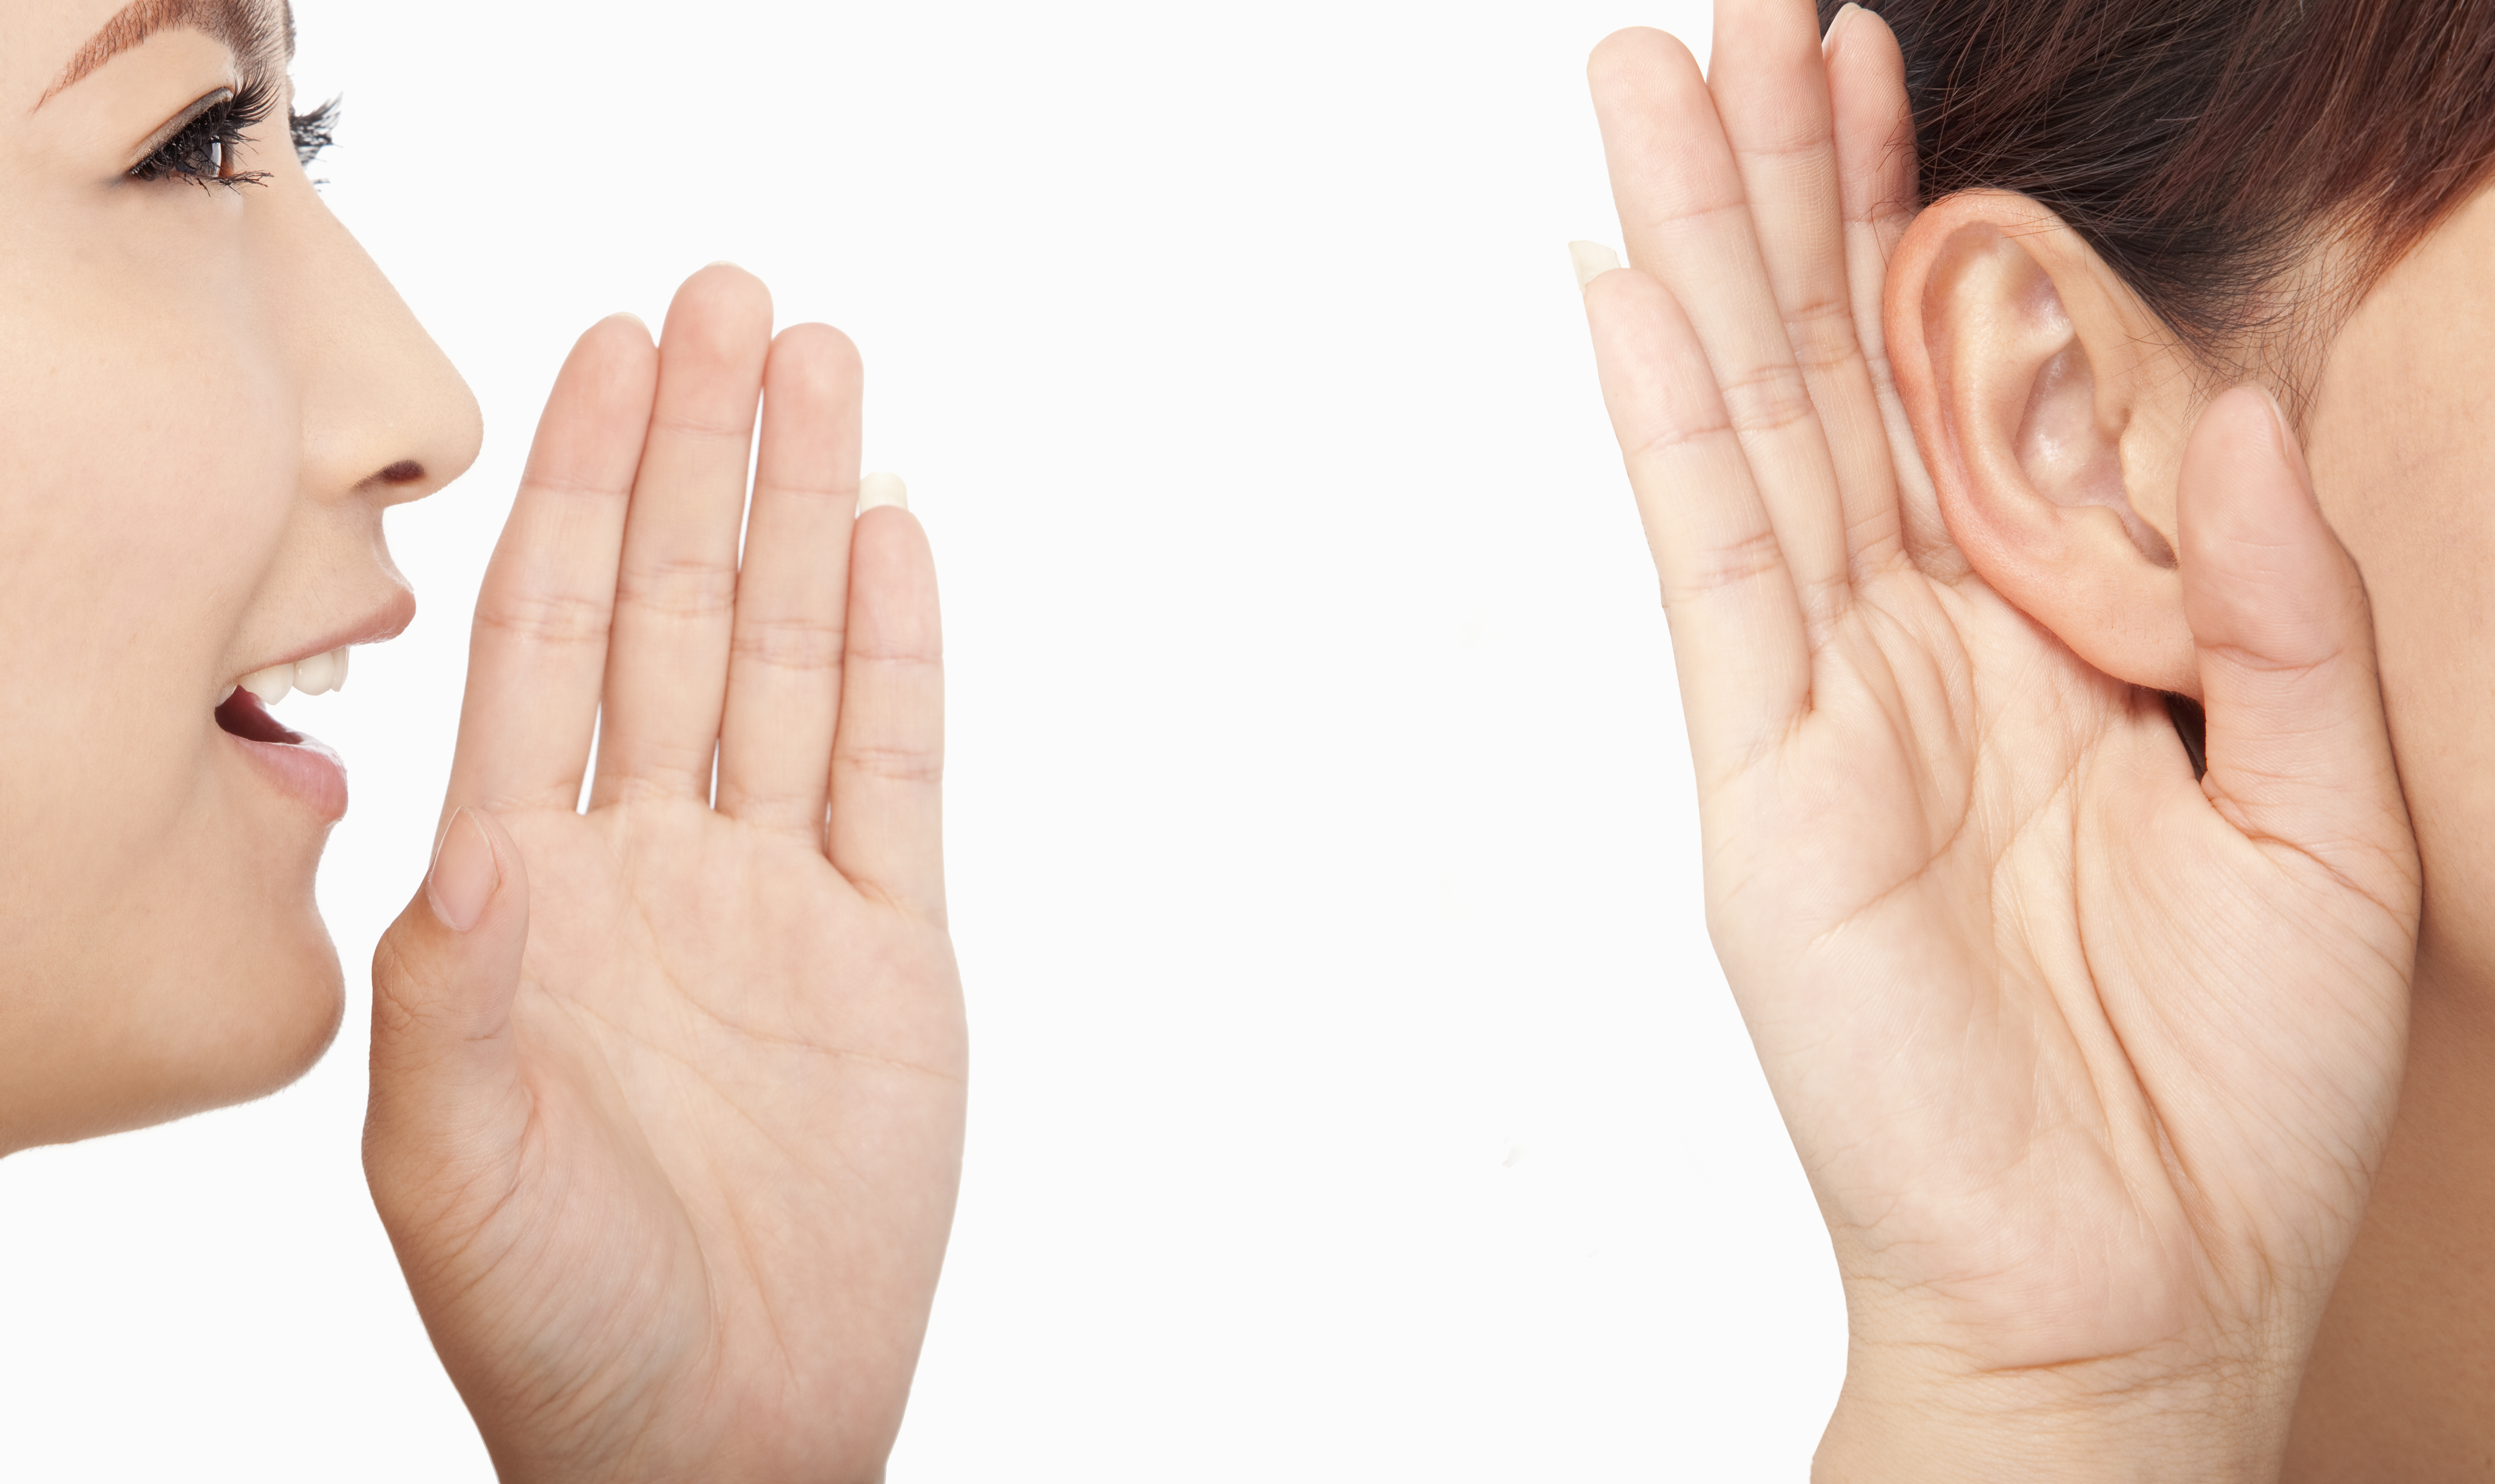 Что либо слышать. Слух и речь. Слушающий человек. Глухота человека. Говорящий и слушающий.